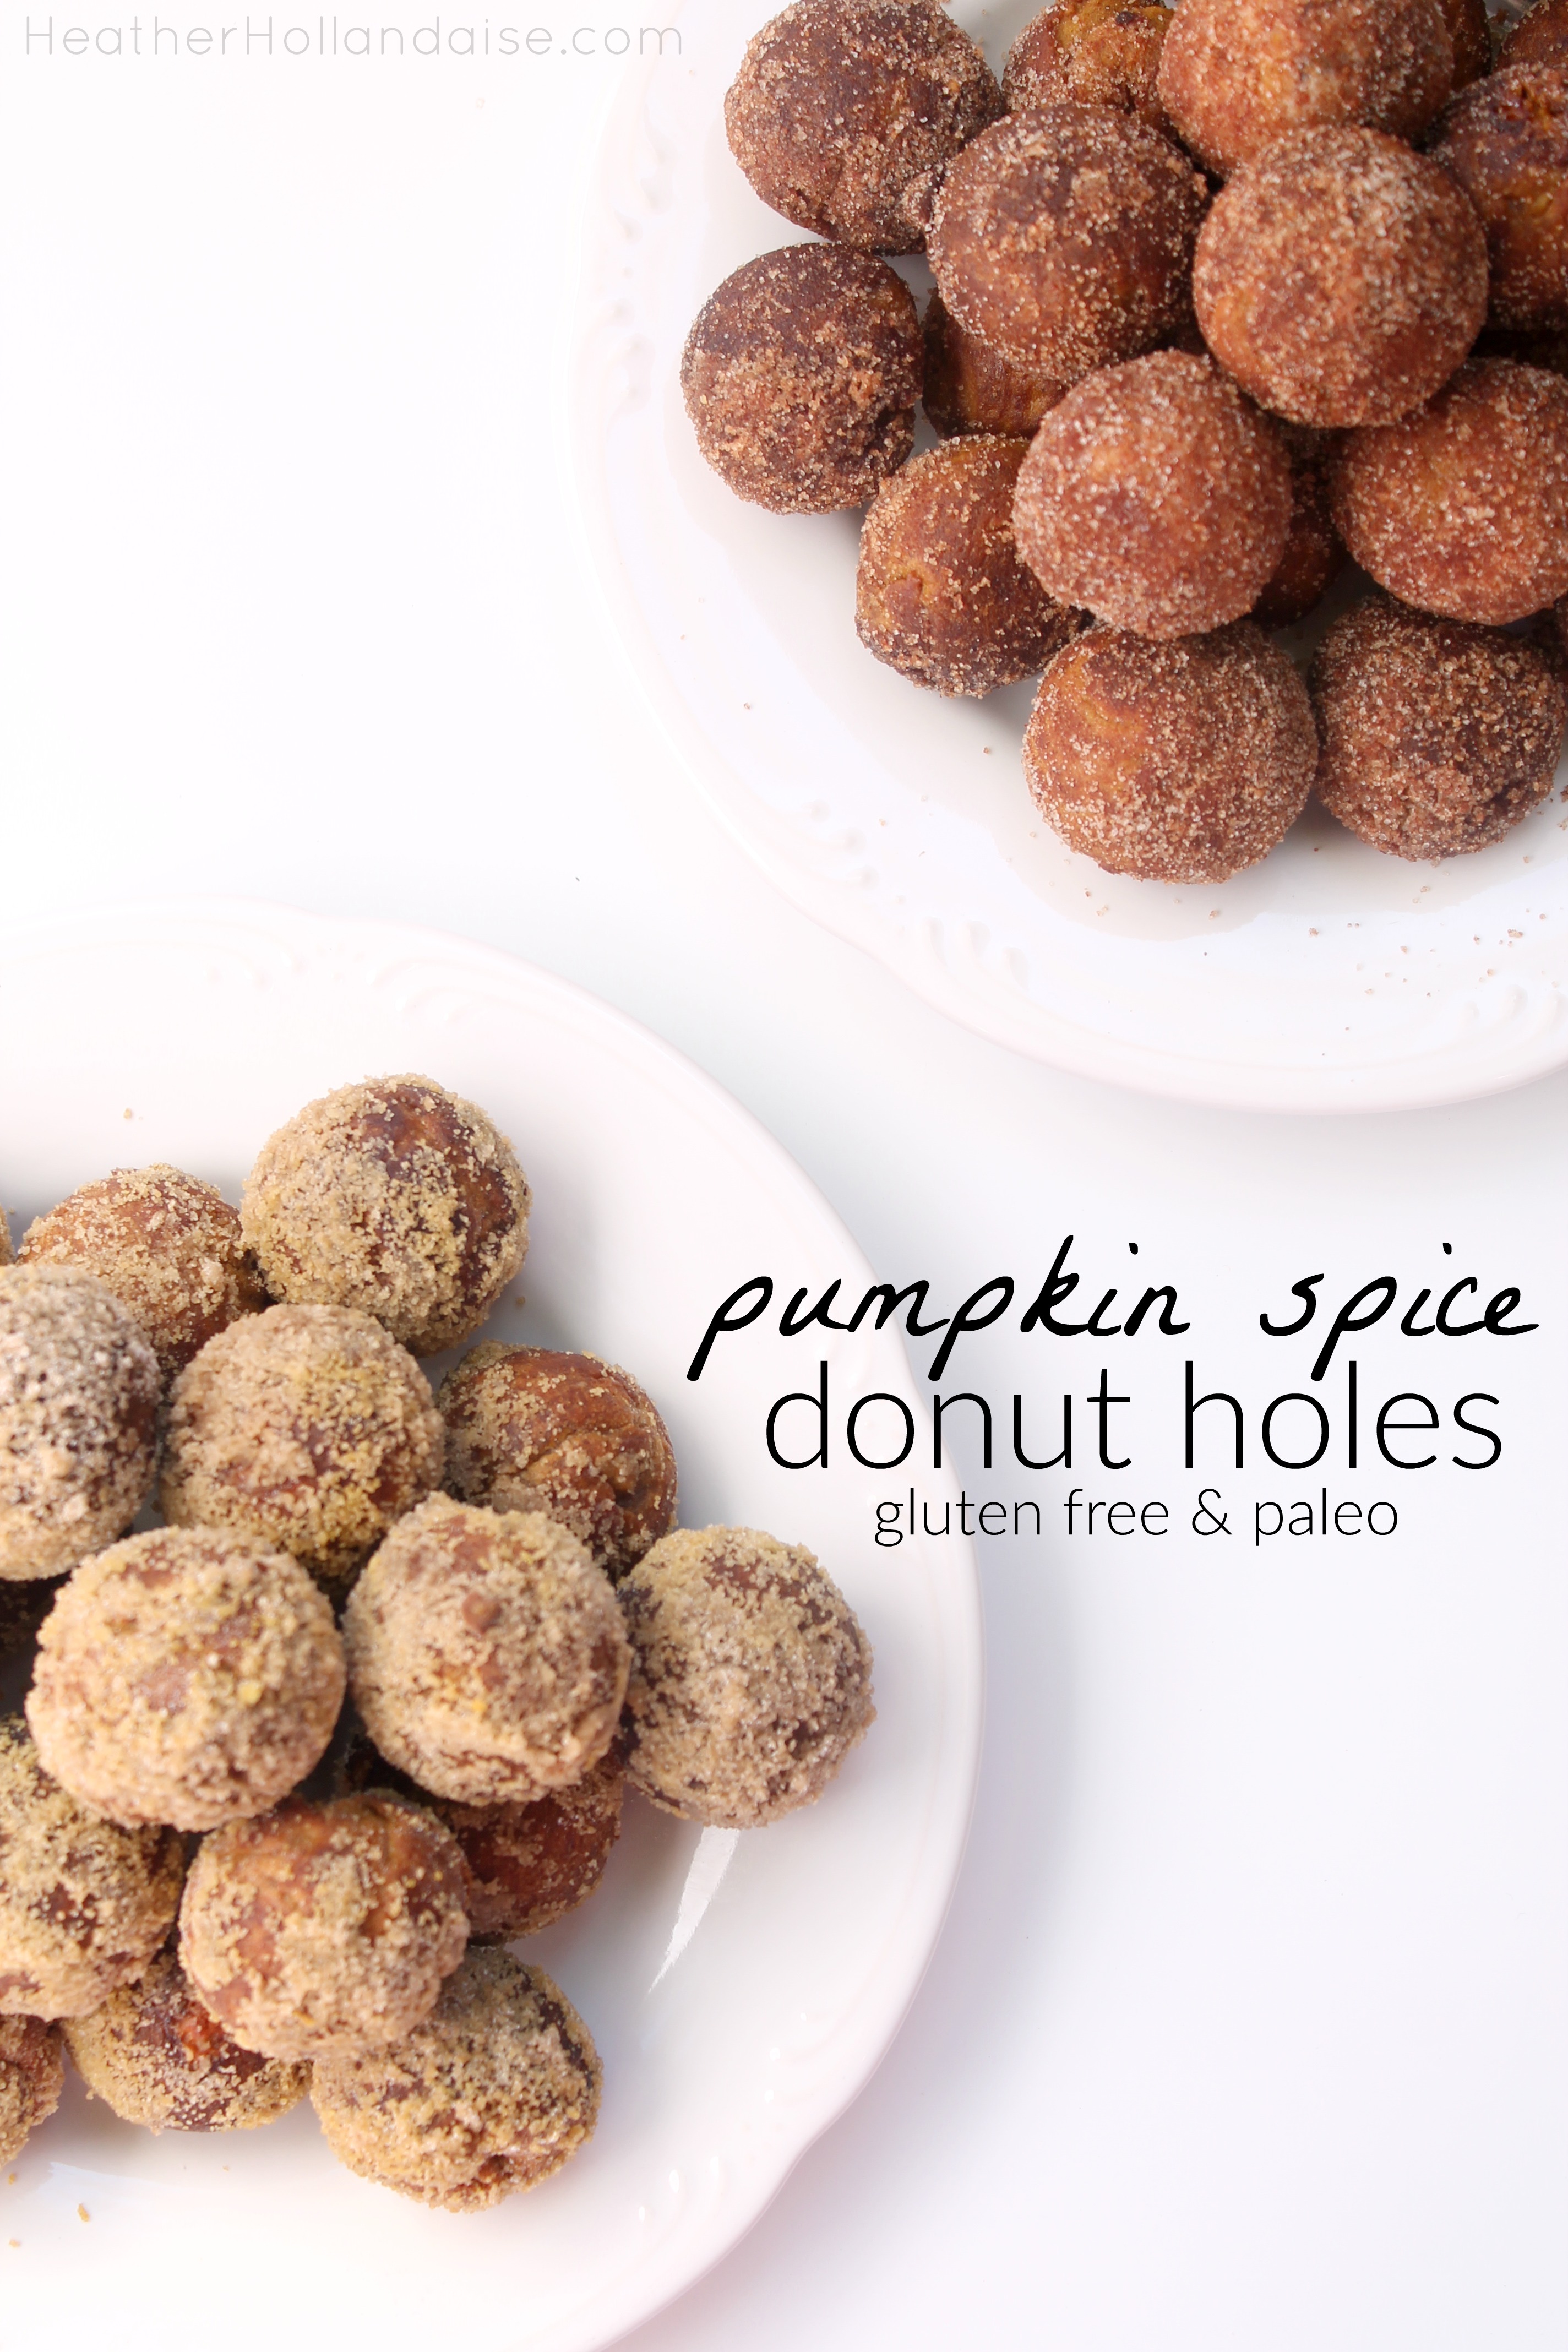 Gluten Free & Paleo Pumpkin Spice Donut Holes